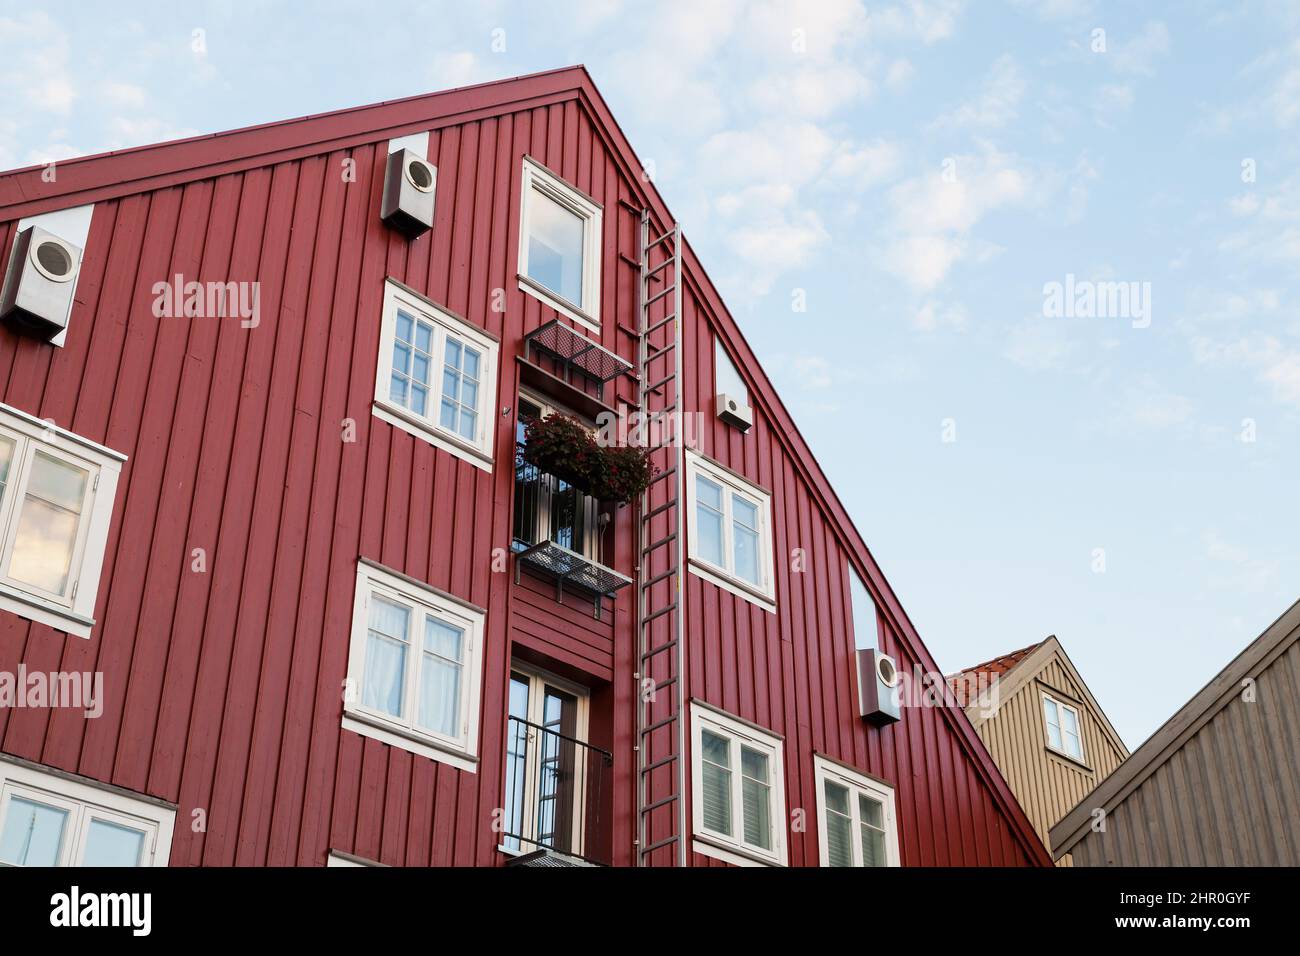 Muro di casa in legno rosso con finestre e scala, tradizionale architettura norvegese Foto Stock